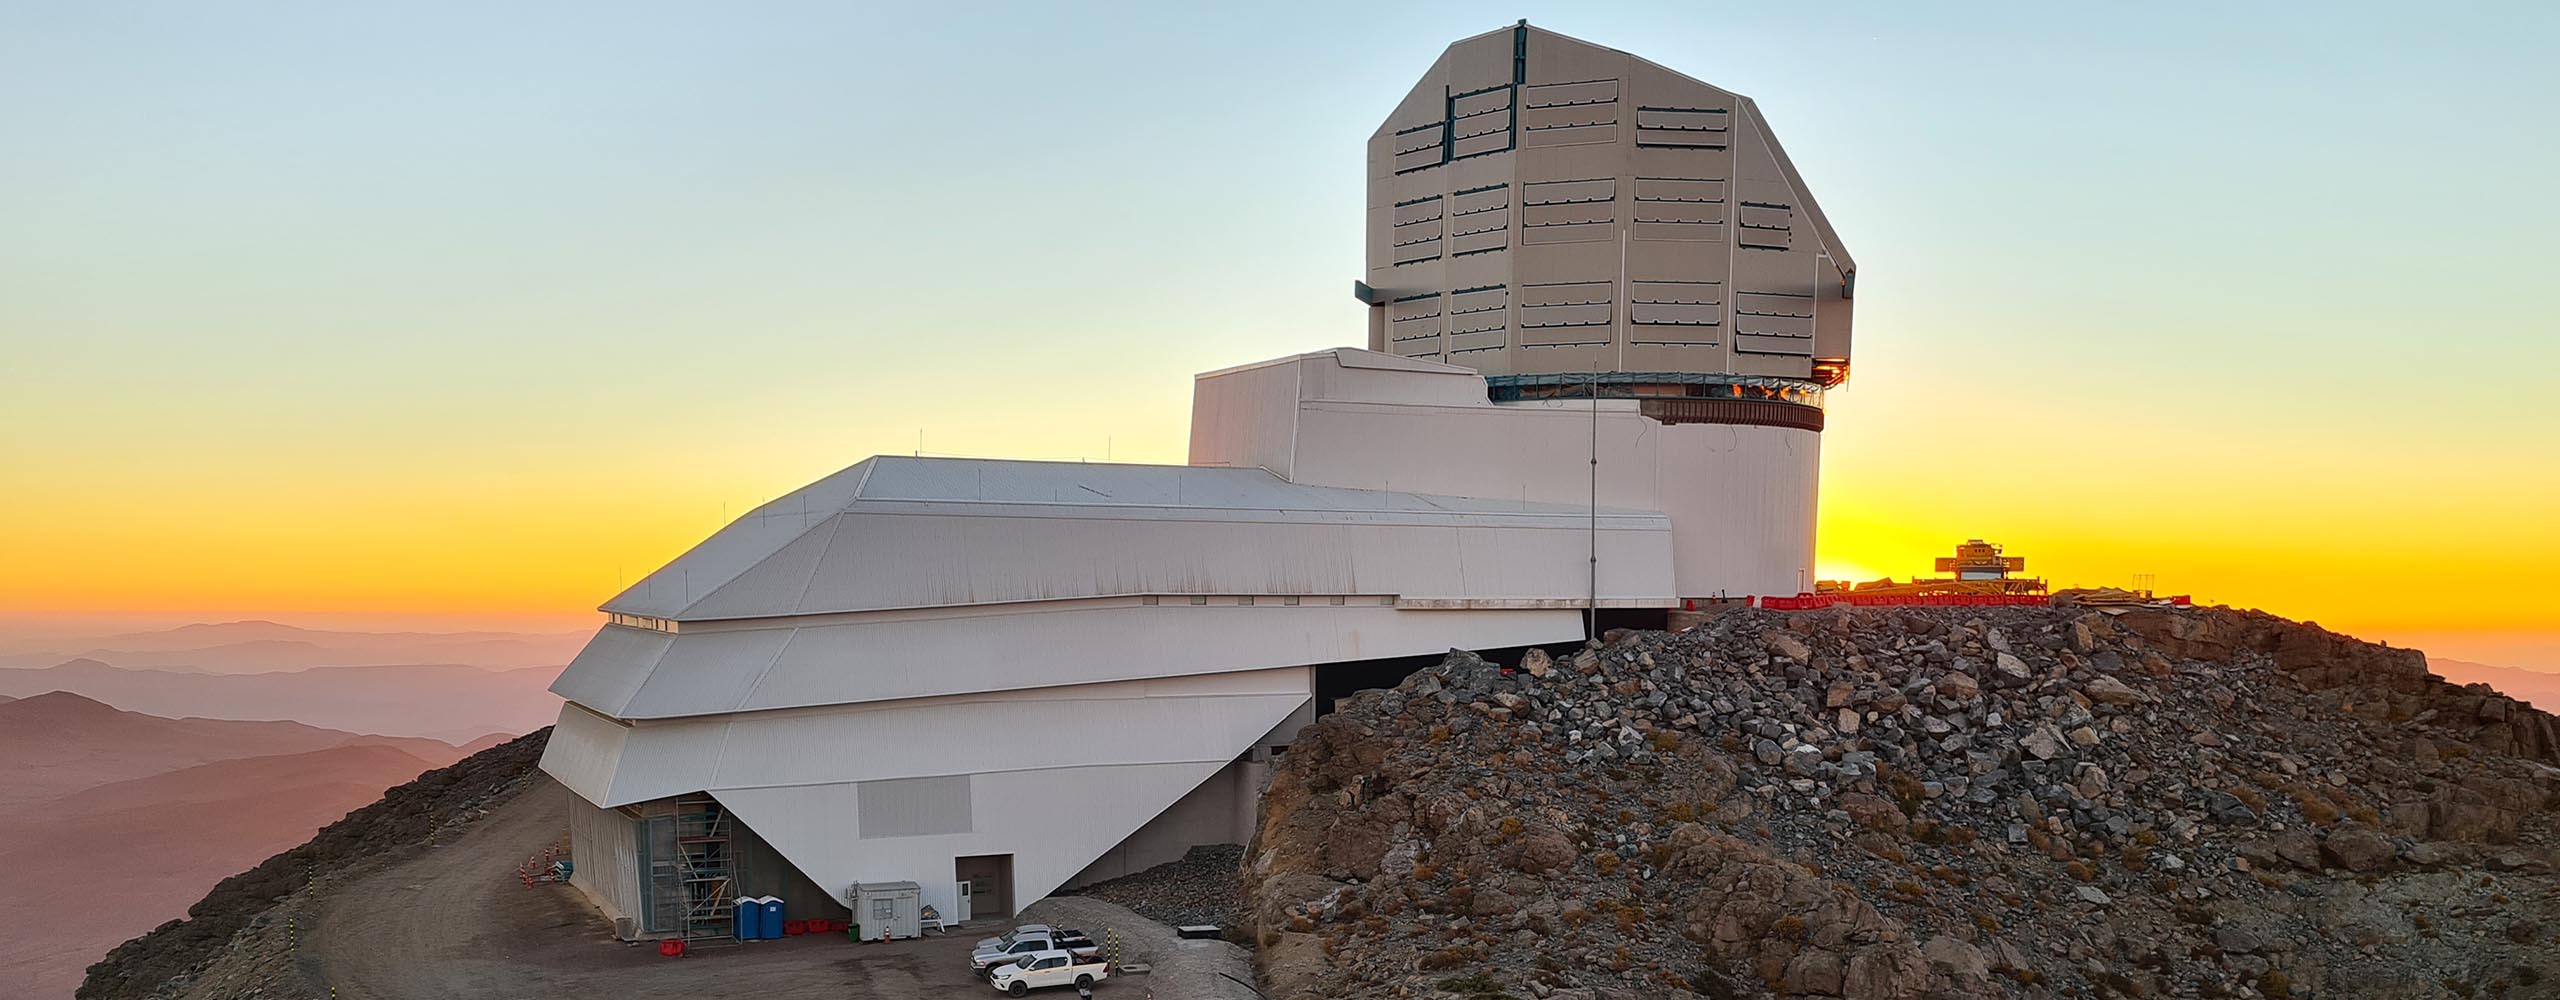 Twilight photo of Rubin Observatory taken in April 2021.